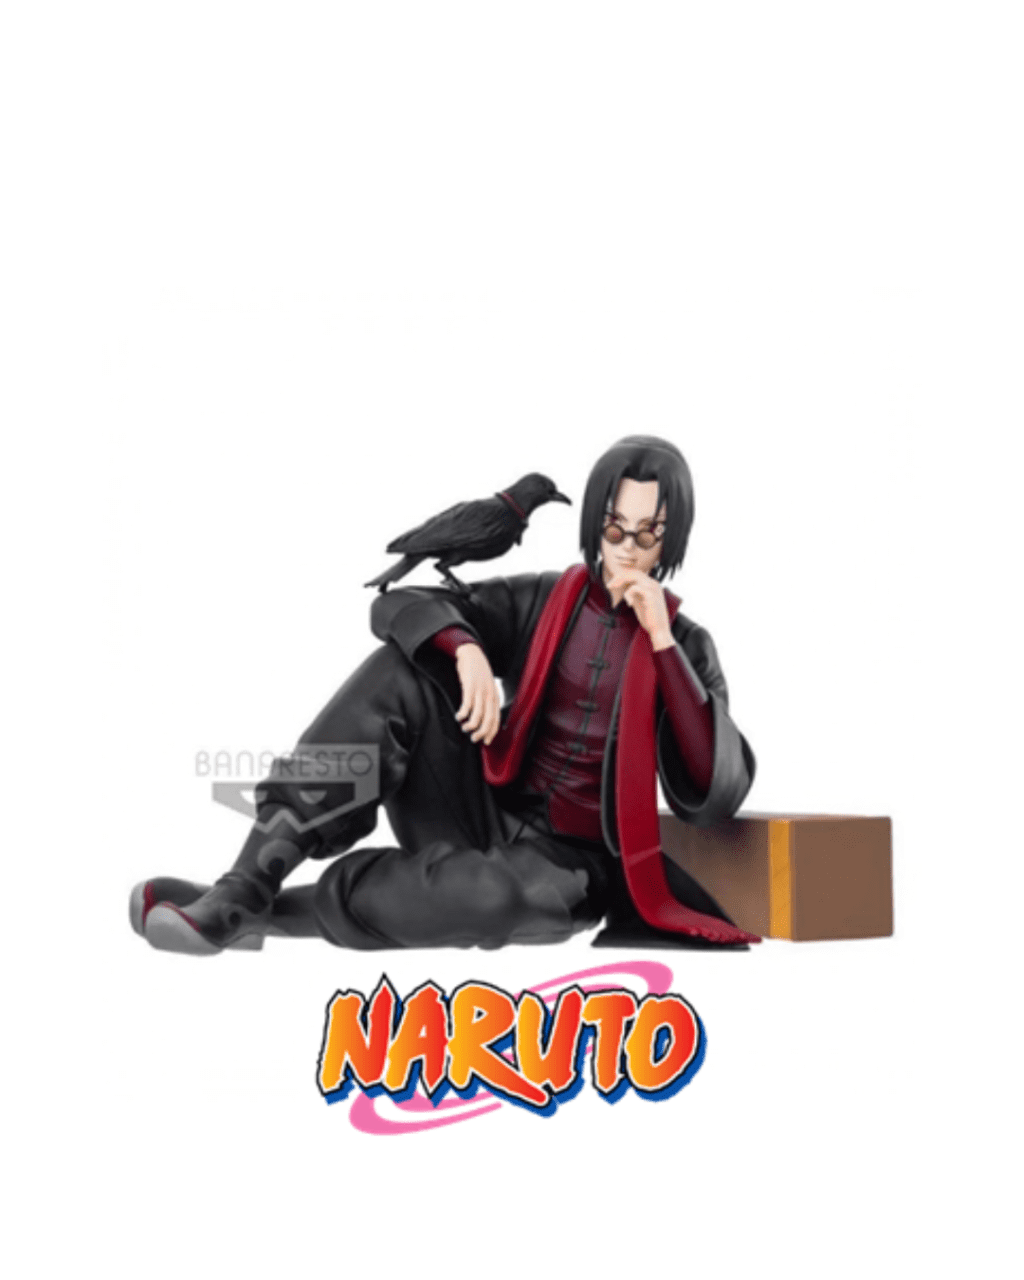 Figurine Banpresto Naruto Itachi Uchiha